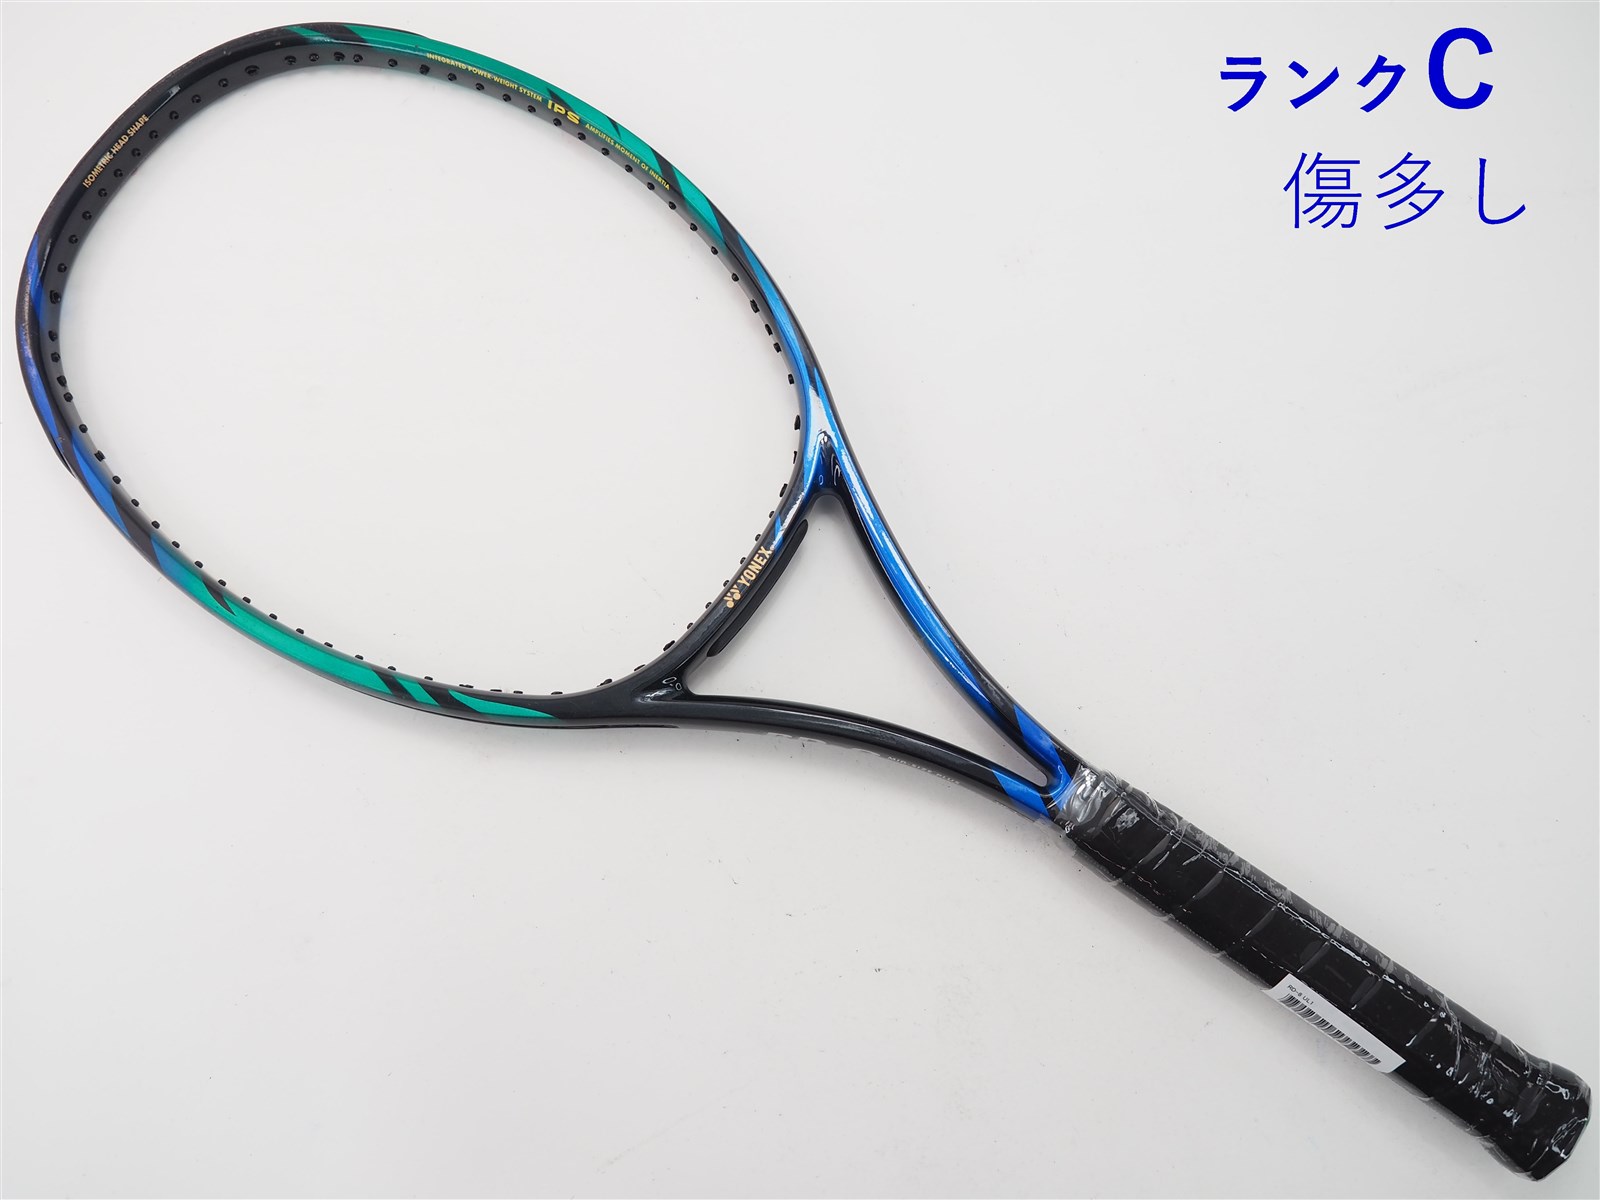 【中古】ヨネックス RD-8YONEX RD-8(UL1)【中古 テニスラケット】